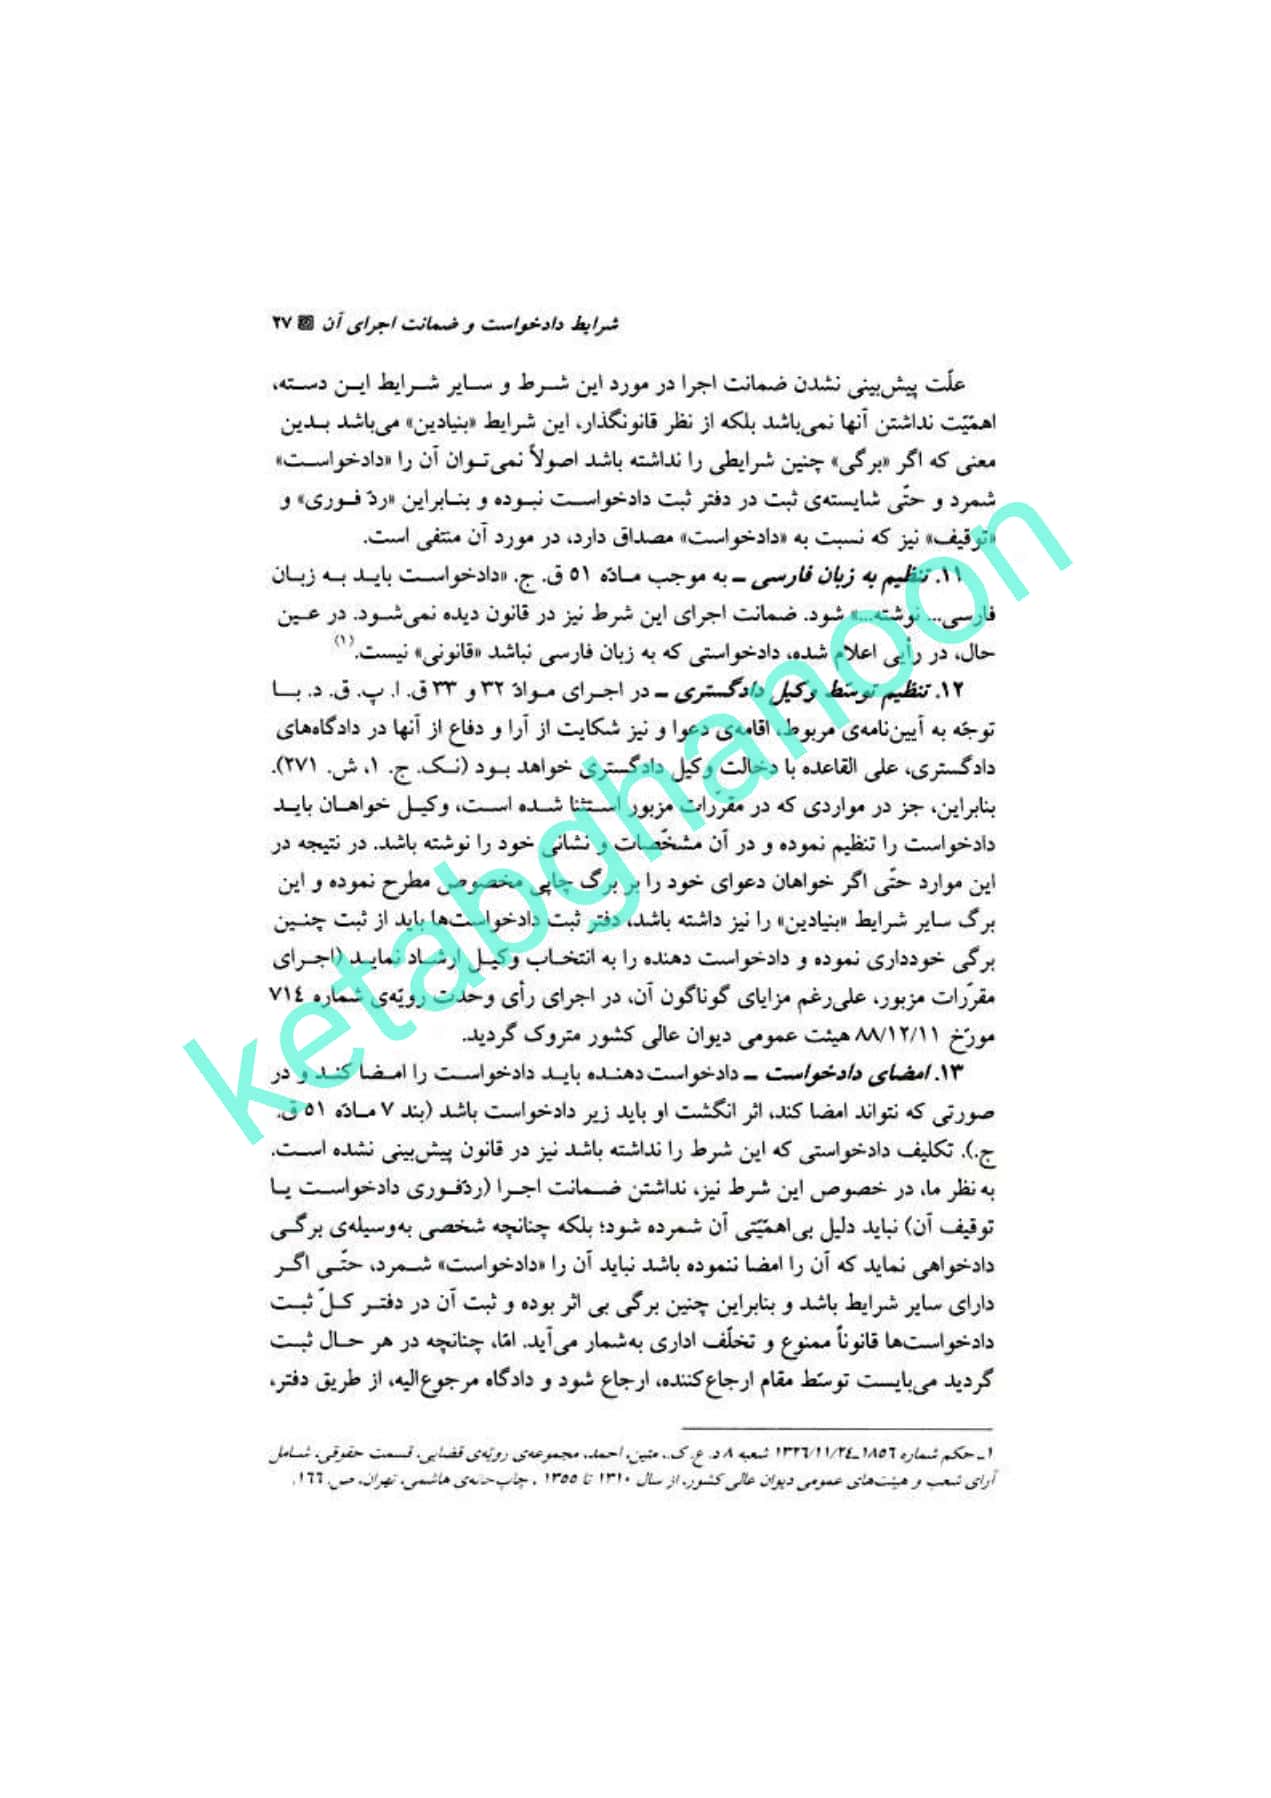 آیین دادرسی مدنی دوره بنیادین جلد دوم شمس